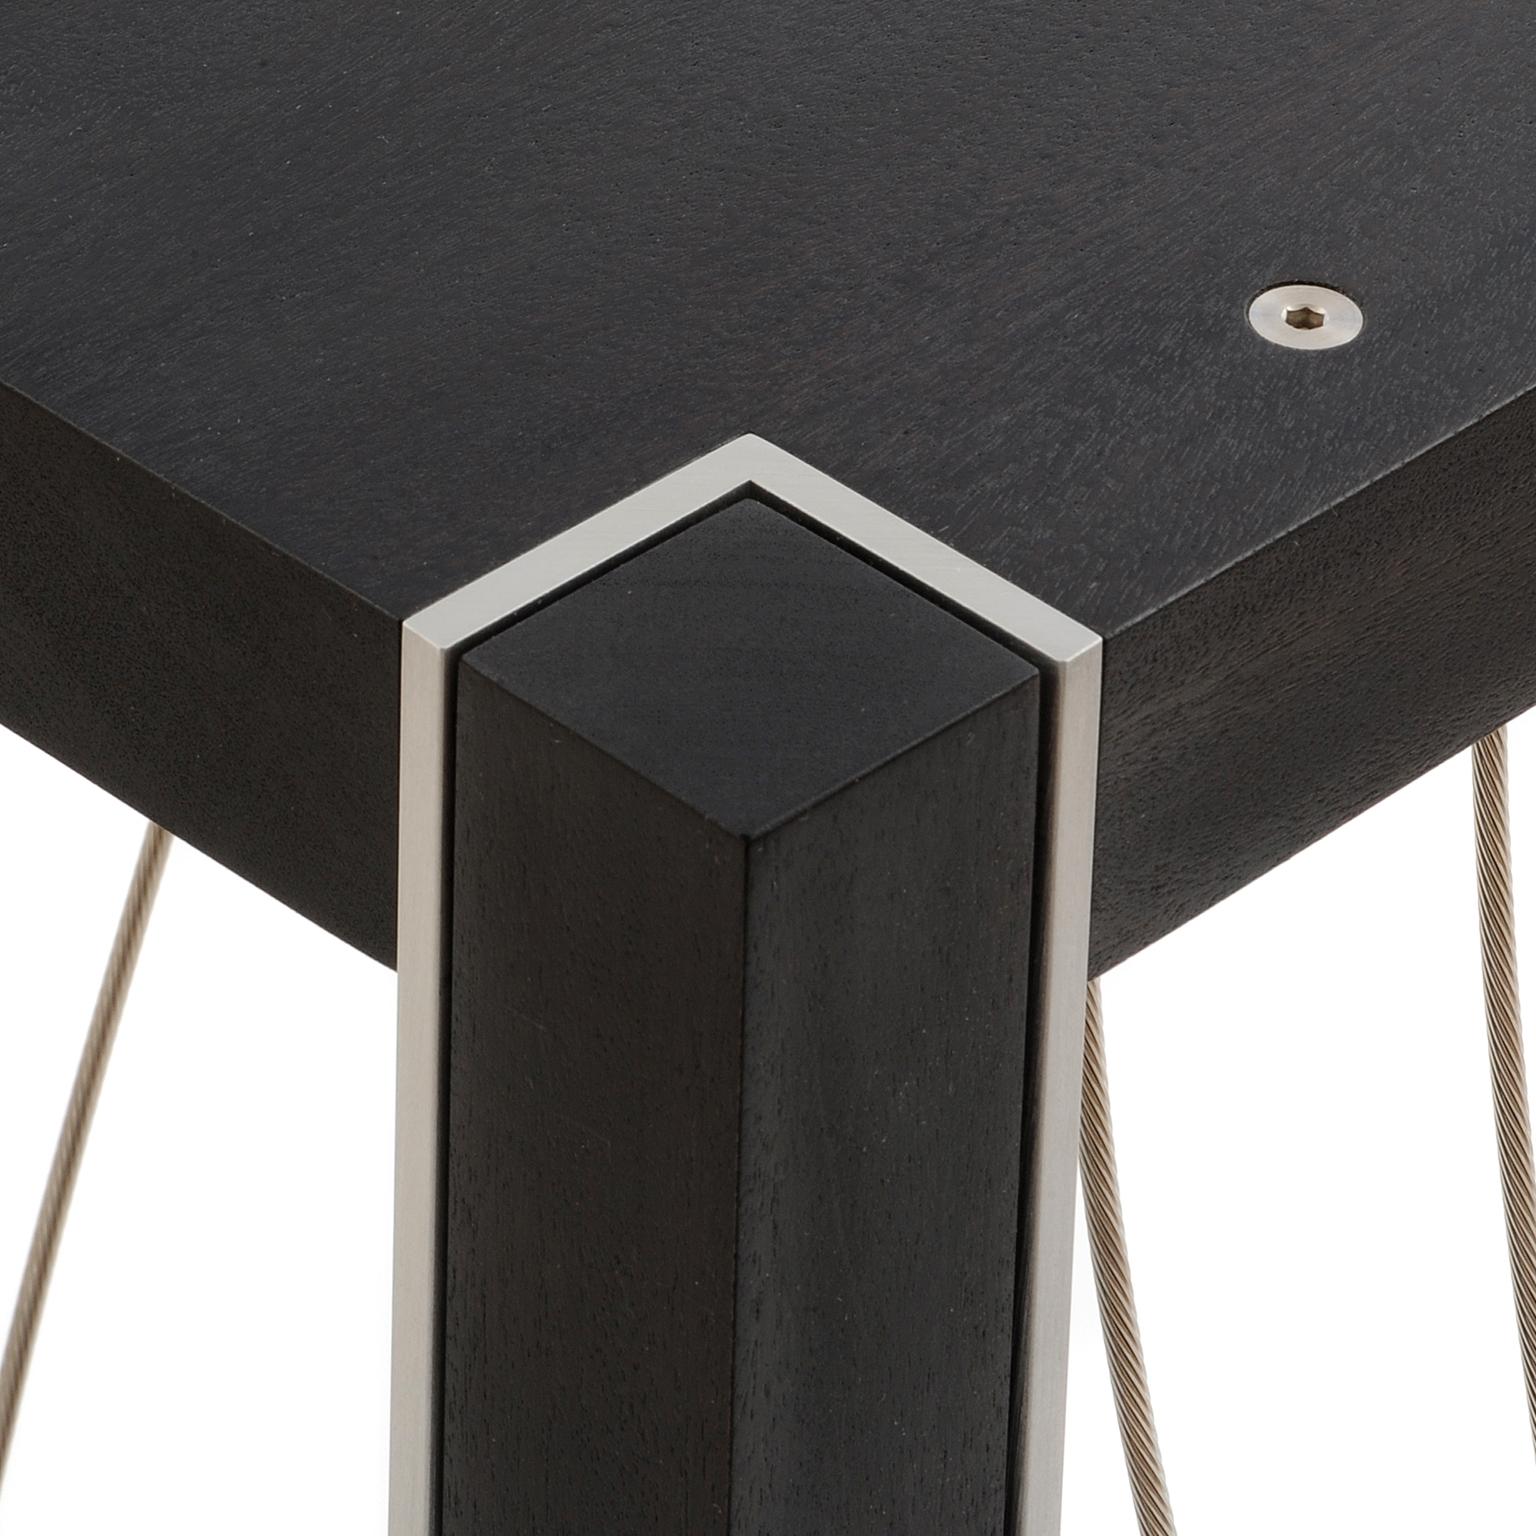 La table Xenon a un plateau carré de 12 pouces et mesure 36 pouces de haut. Ce piédestal présente des câbles en acier inoxydable tordus en une série de courbes agréables. Il a une présence sculpturale pour accentuer de manière unique votre pièce. La